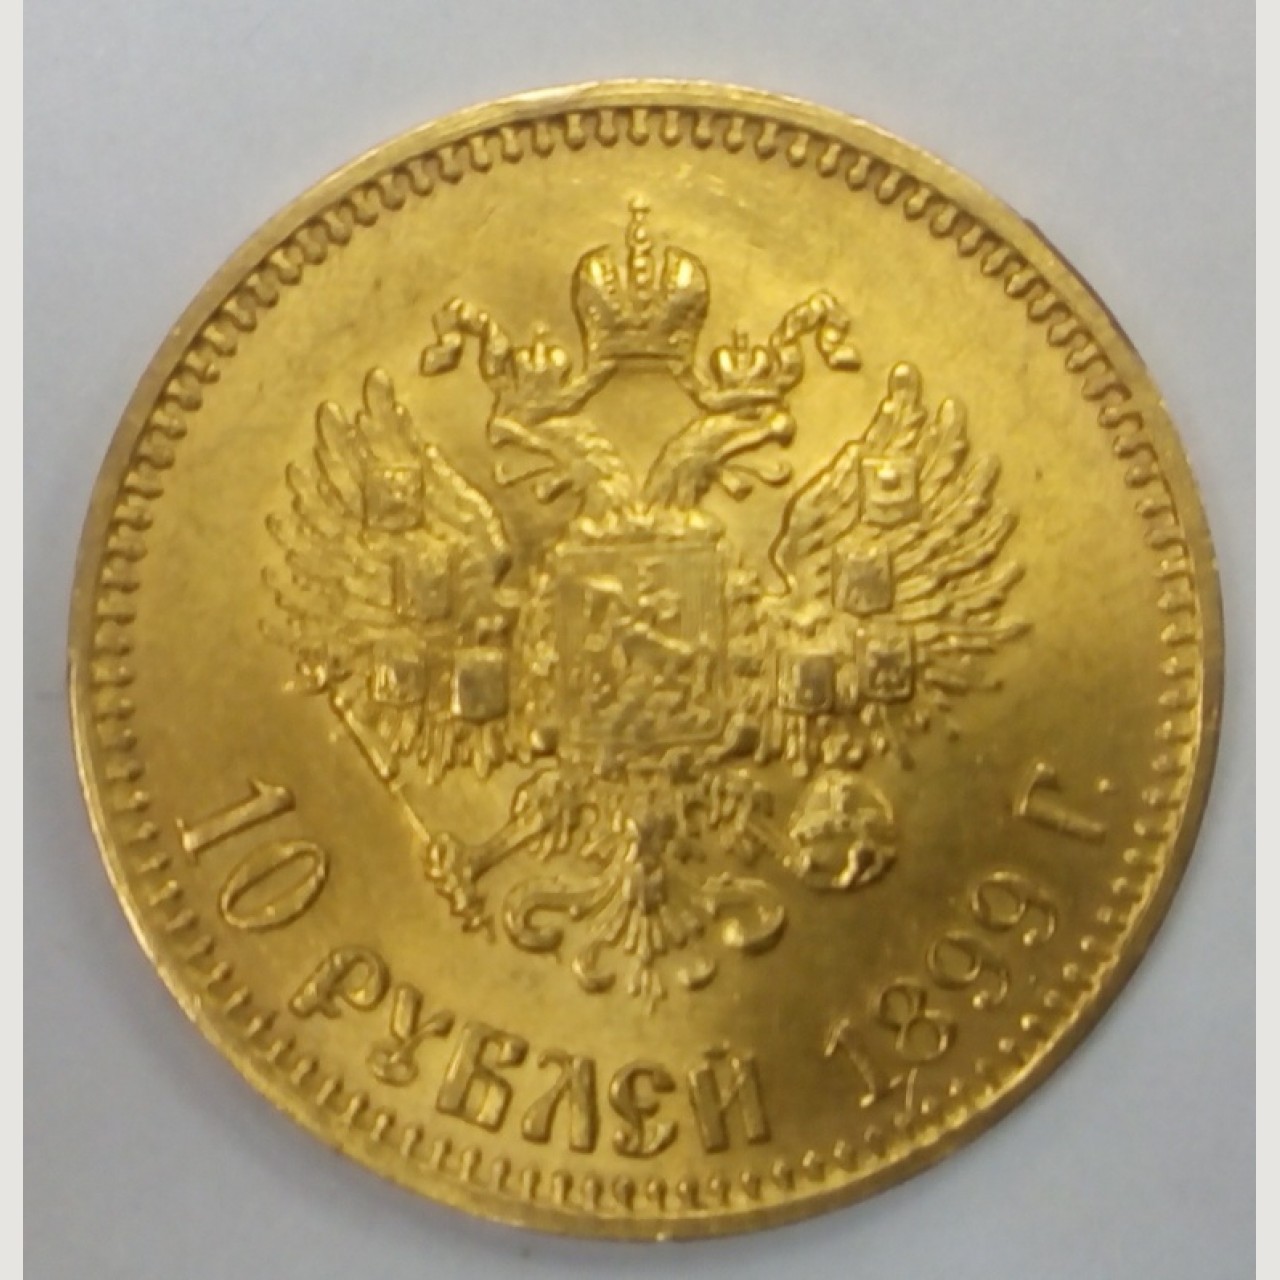 Николаевские 10 рублей. 10 Рублей золото. 10 Рублей 1899. Десятка золотых монет николаевских.